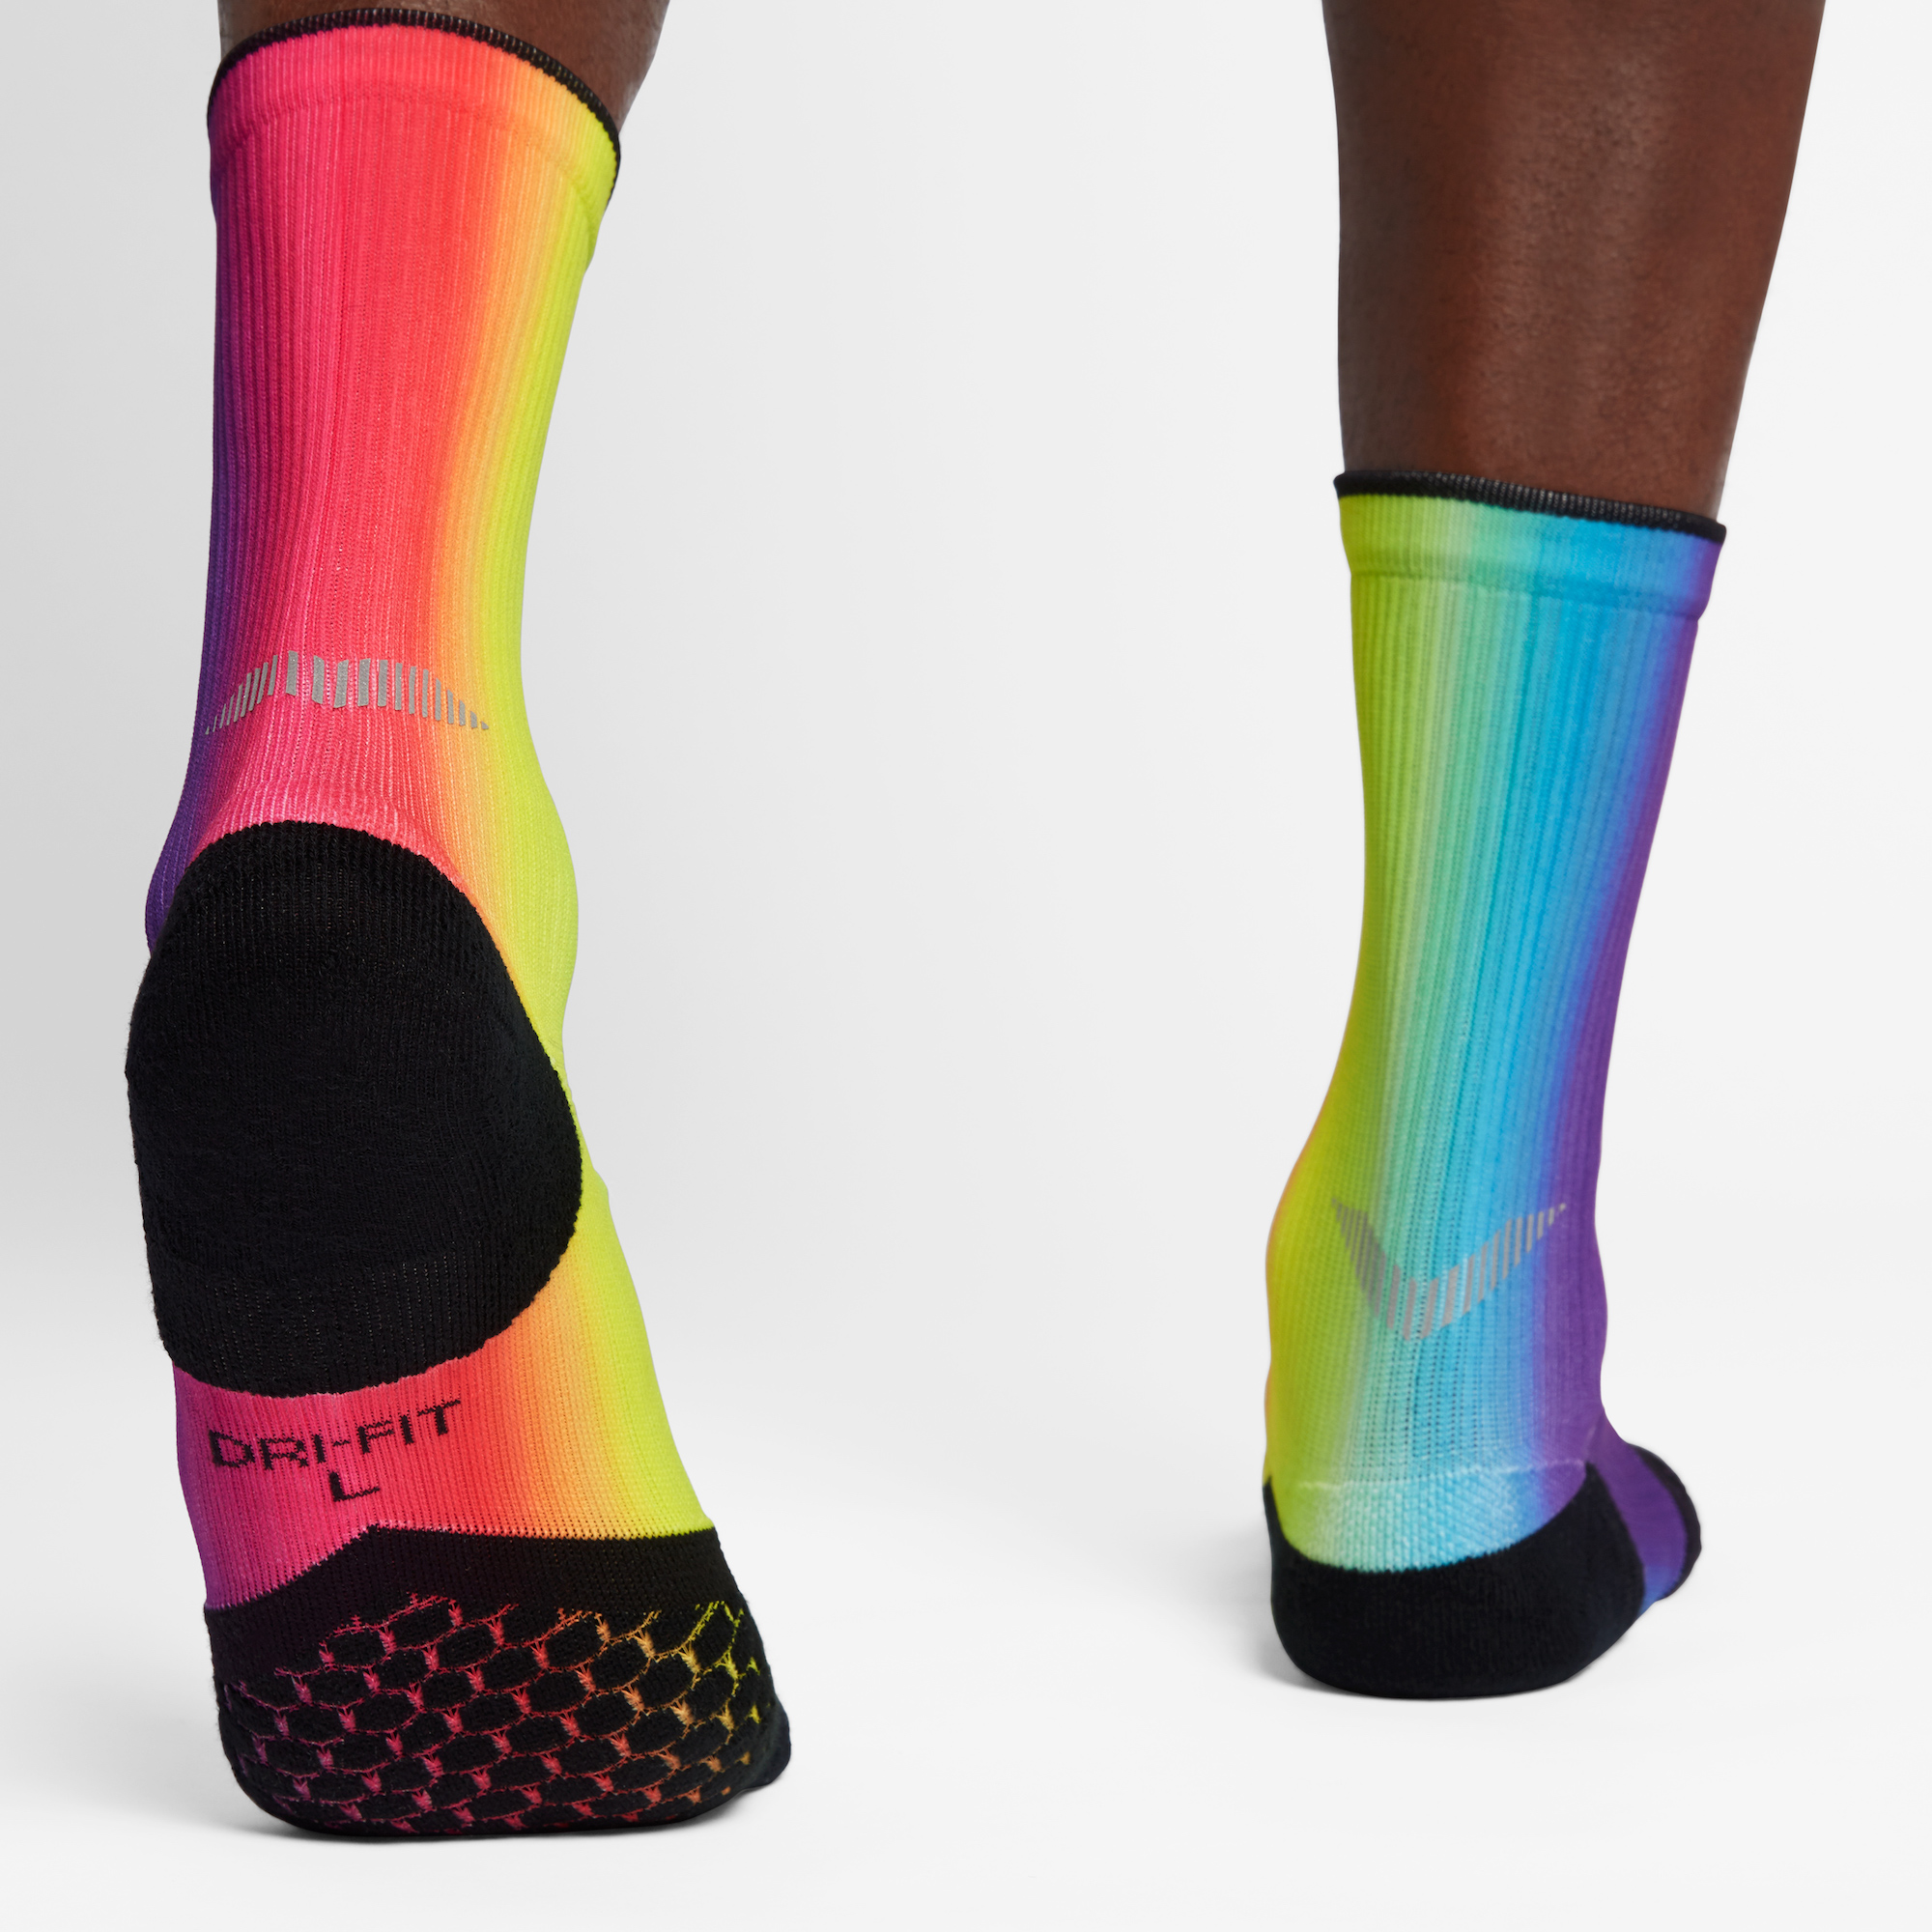 elite running socks